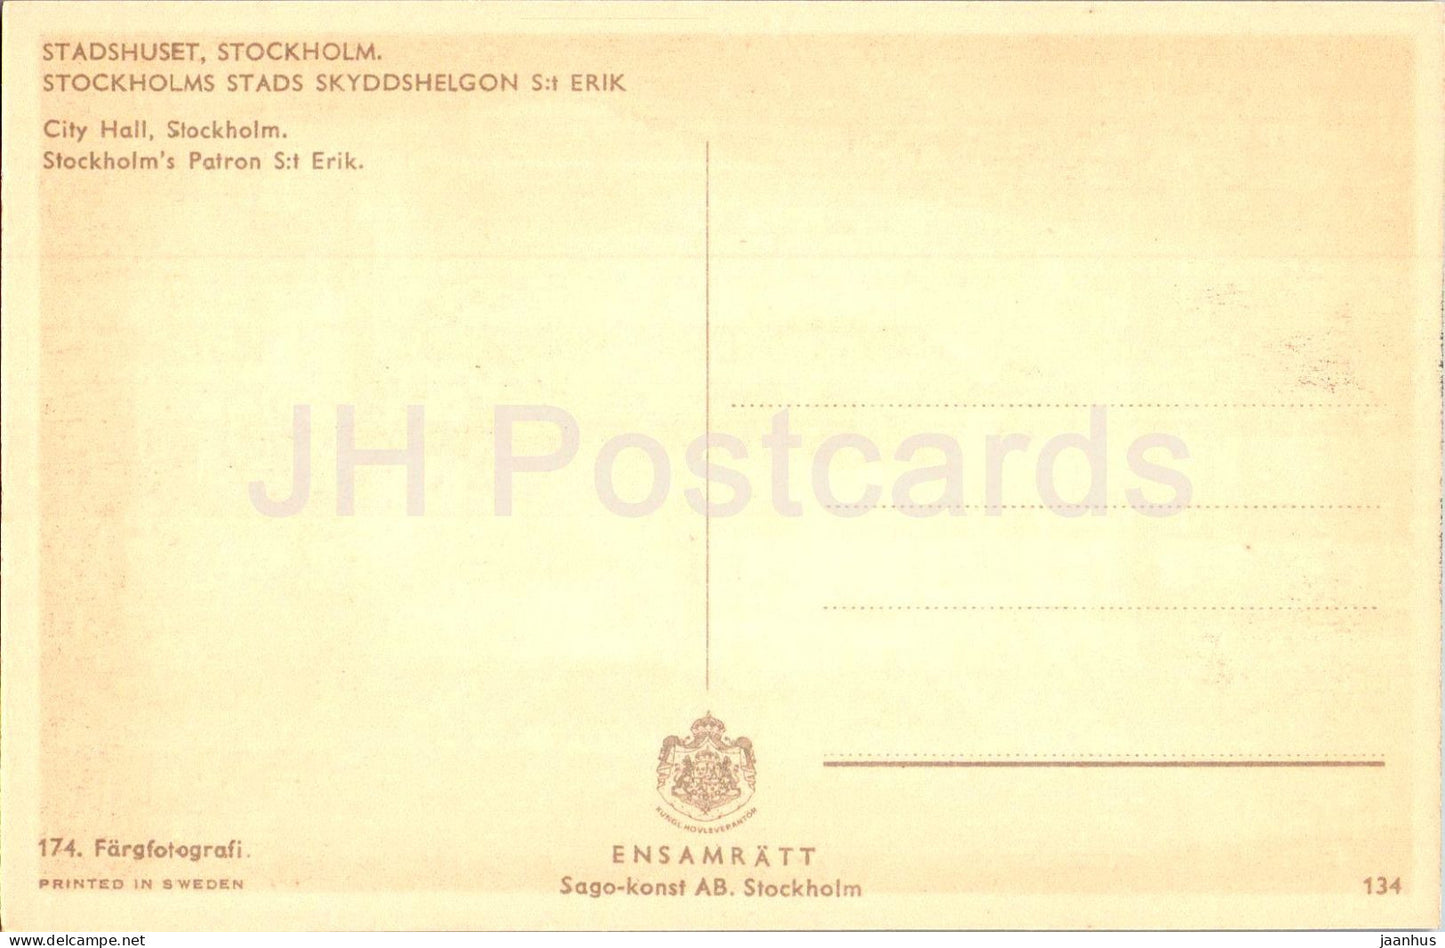 Stockholm - Stadshuset - Stockholms stads Skyddshelgon St Erik - patron - 134 - old postcard - Sweden - unused